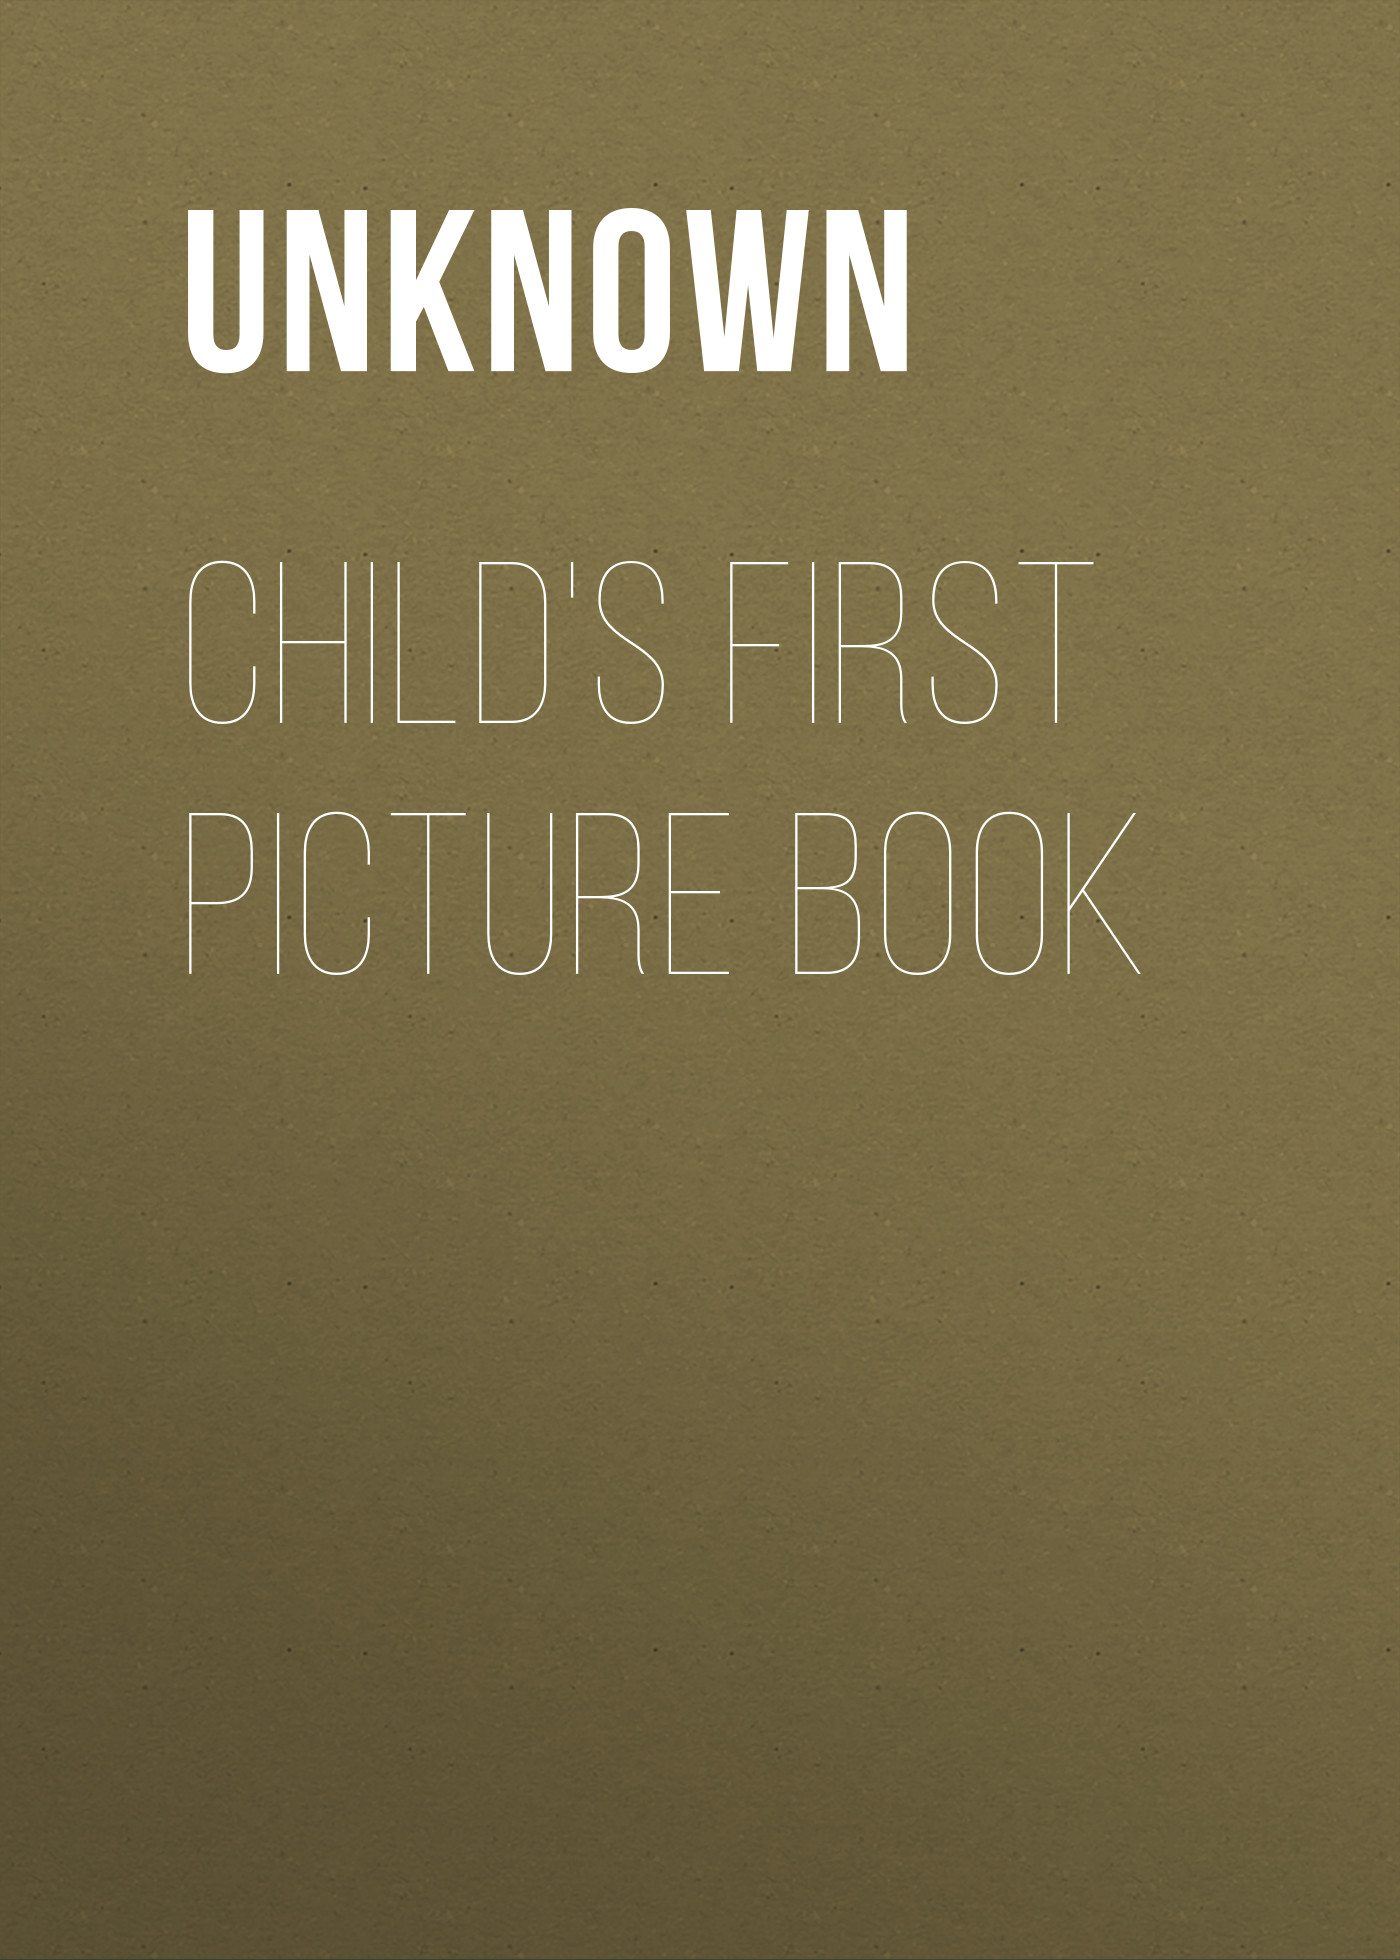 Книга Child's First Picture Book из серии , созданная Unknown Unknown, может относится к жанру Зарубежные детские книги, Книги для детей: прочее, Зарубежная старинная литература, Зарубежная классика. Стоимость электронной книги Child's First Picture Book с идентификатором 35495935 составляет 0 руб.